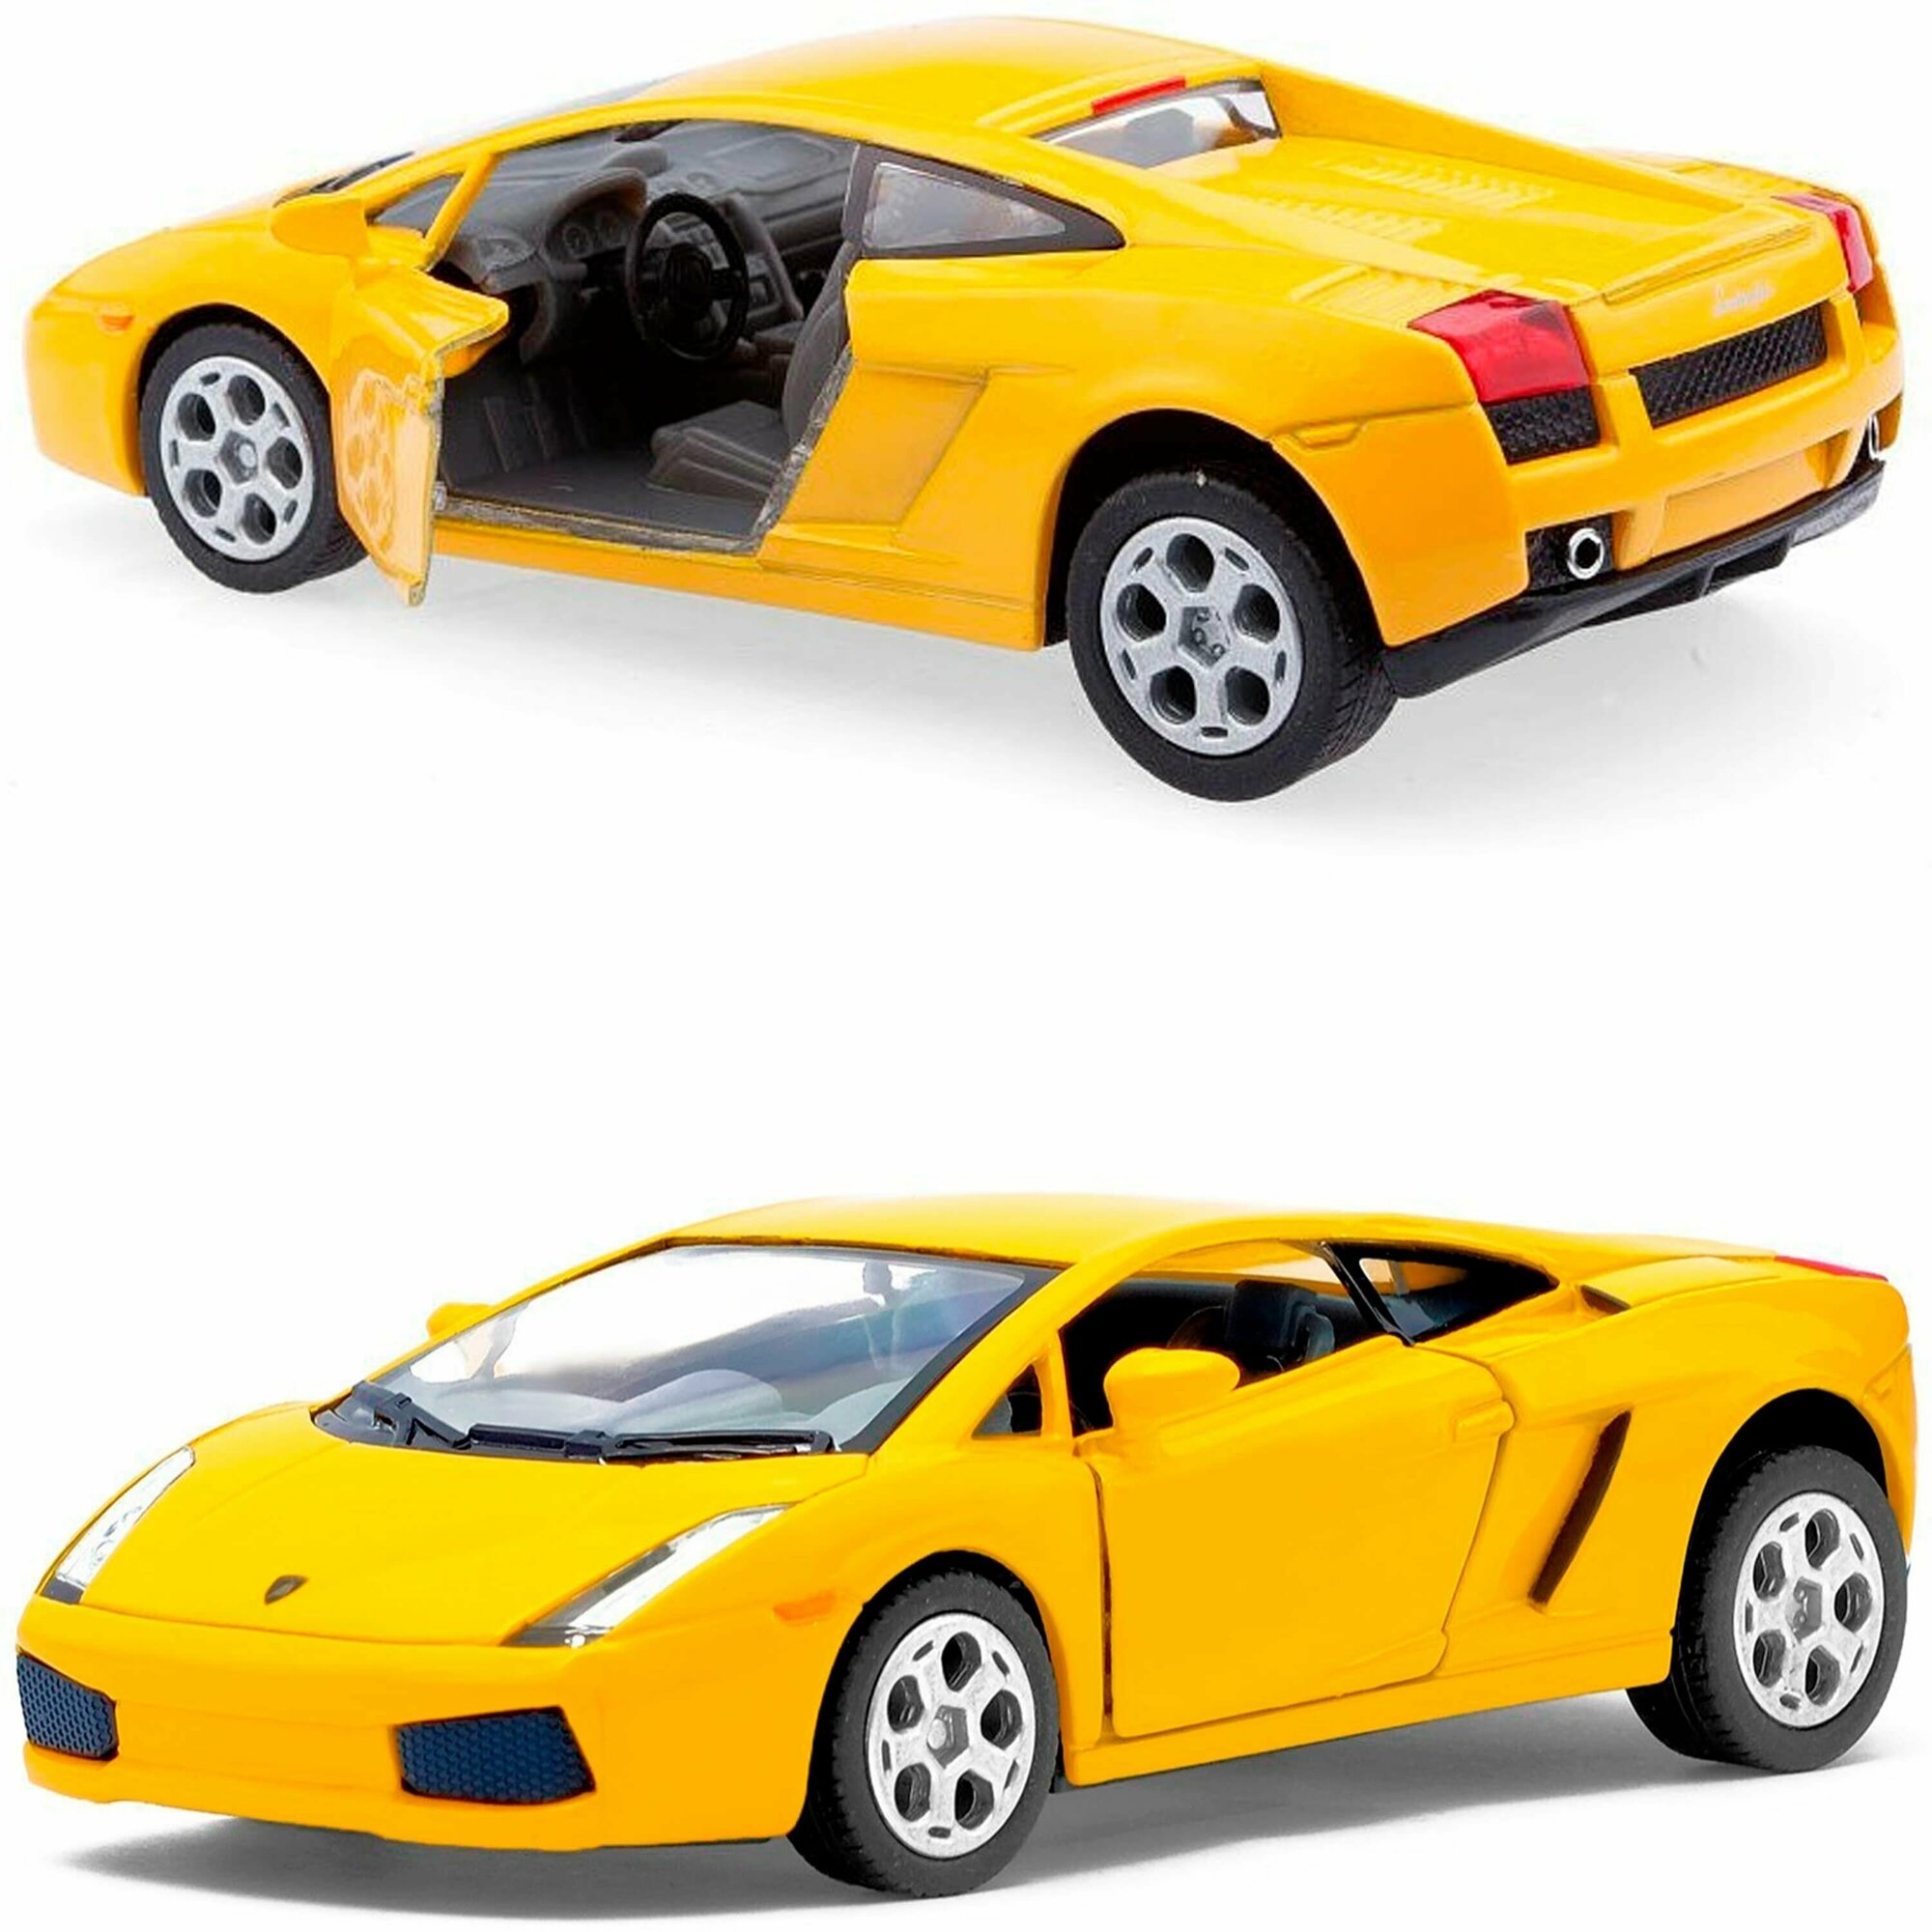 Металлическая игрушечная машинка 1:32 Lamborghini Gallardo, инерционный механизм, желтый